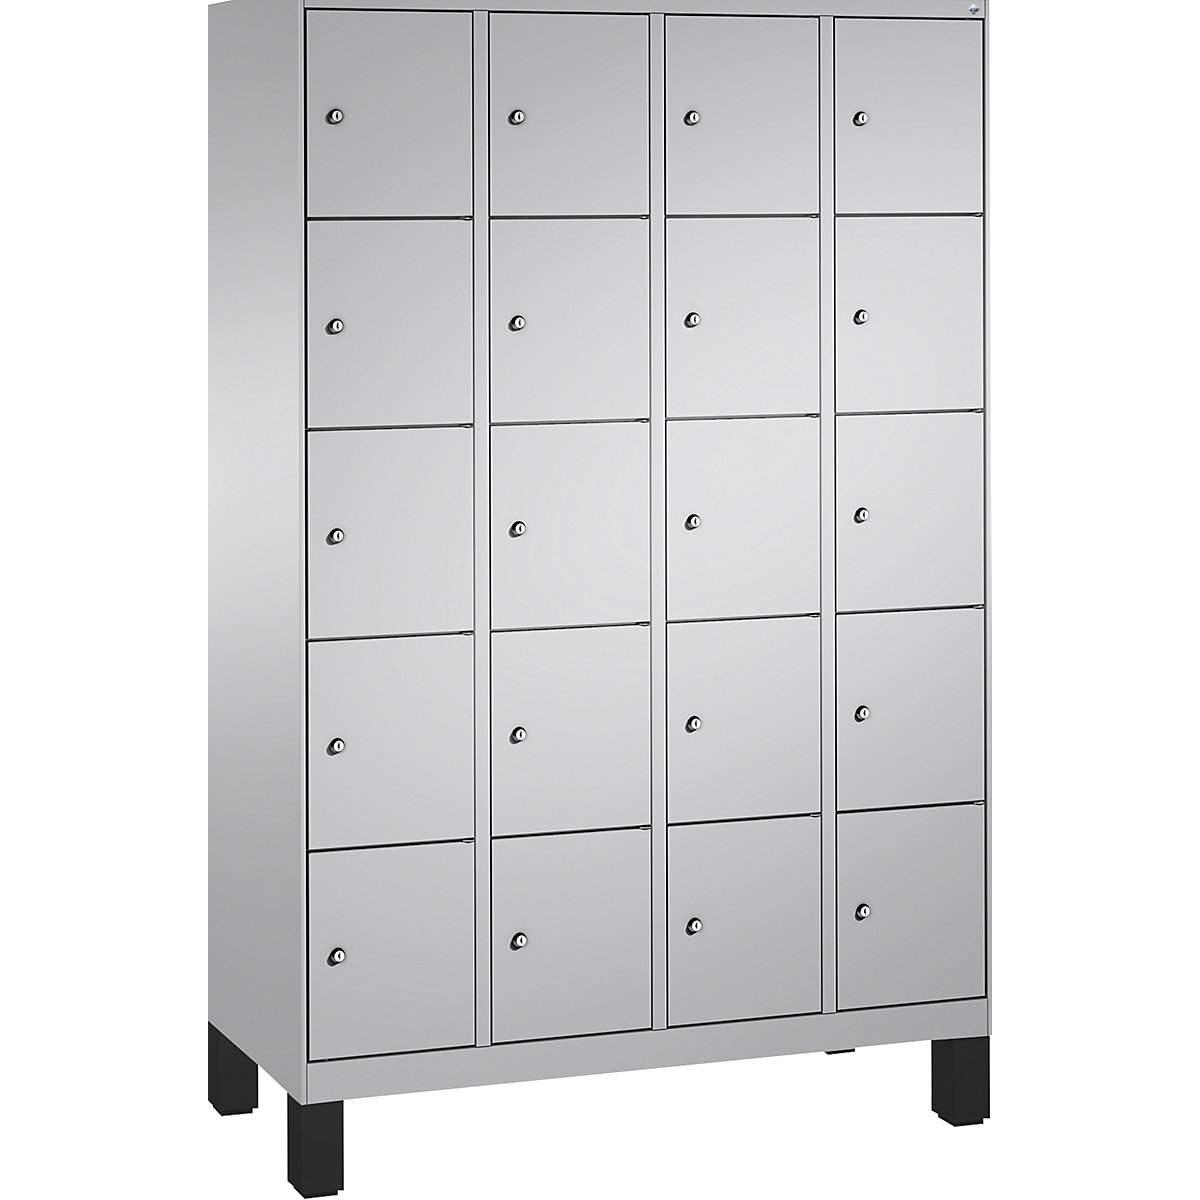 Armoire à casiers sur pieds EVOLO – C+P, 4 compartiments, 5 casiers chacun, largeur compartiments 300 mm, aluminium / aluminium-16